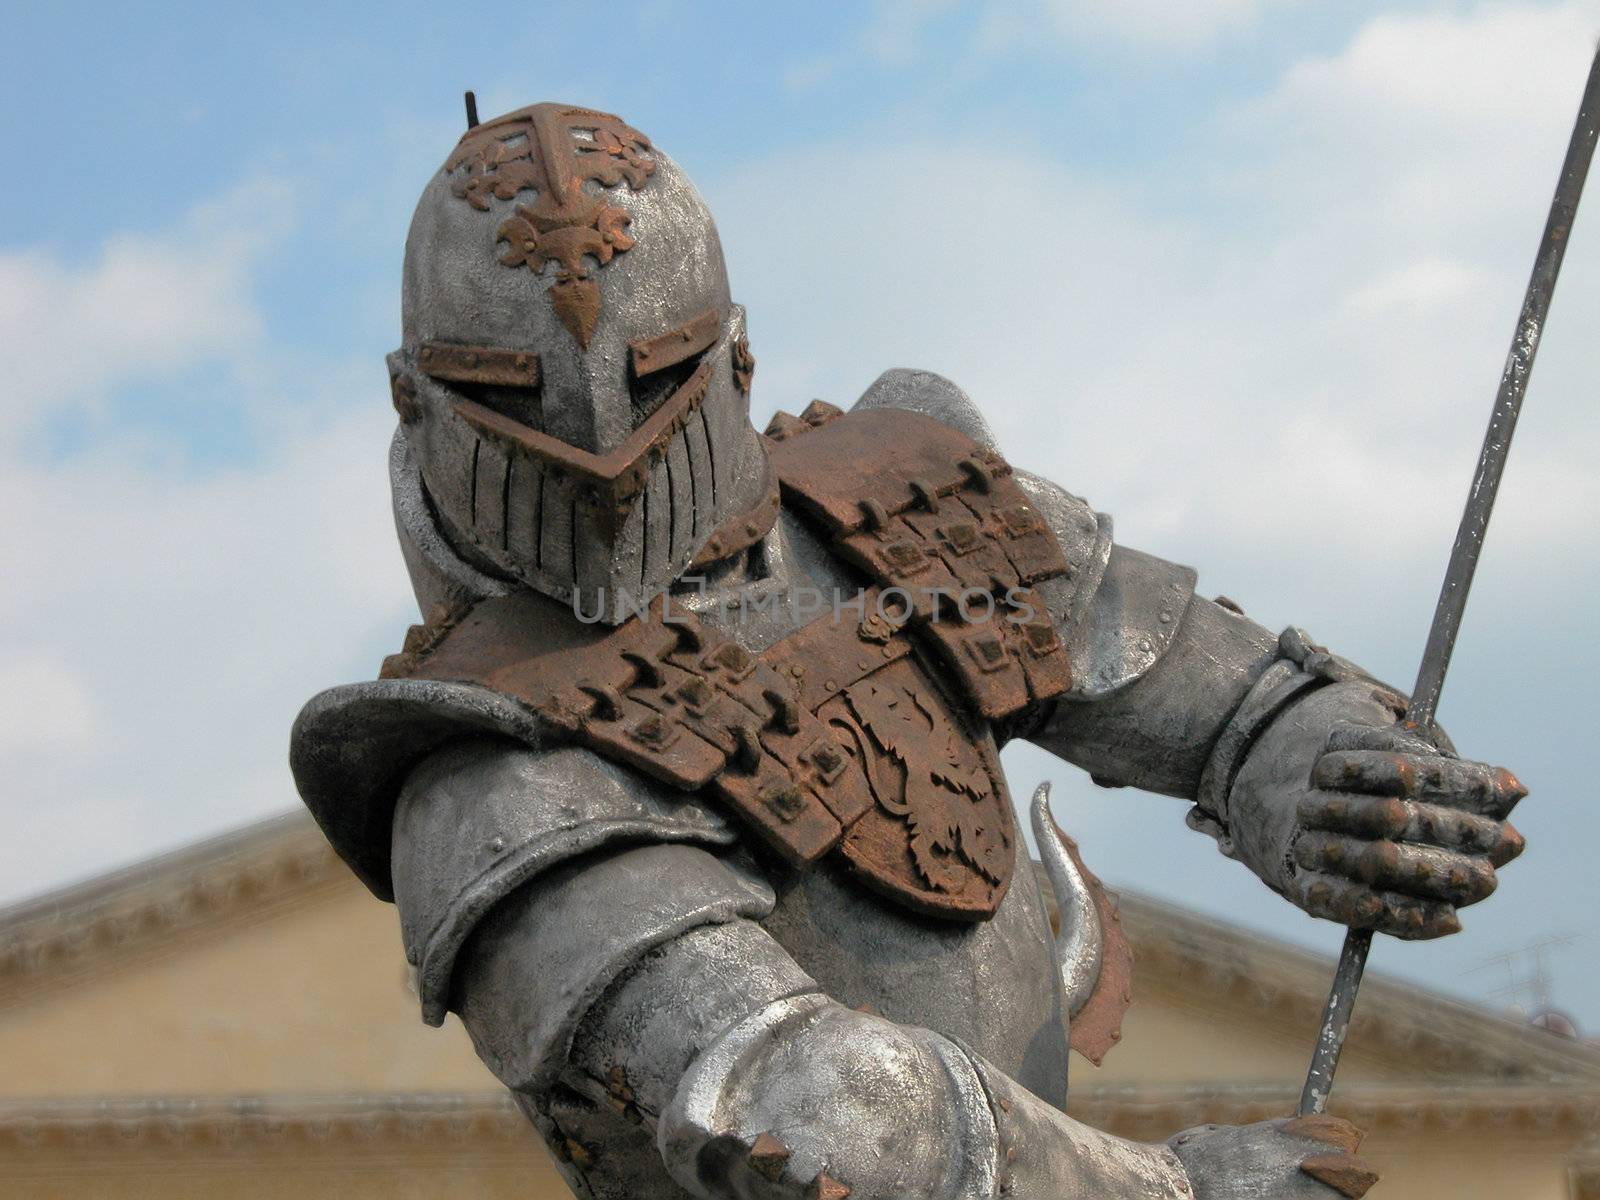 Warrior Armour, Verona, Italy, 2004 by jovannig